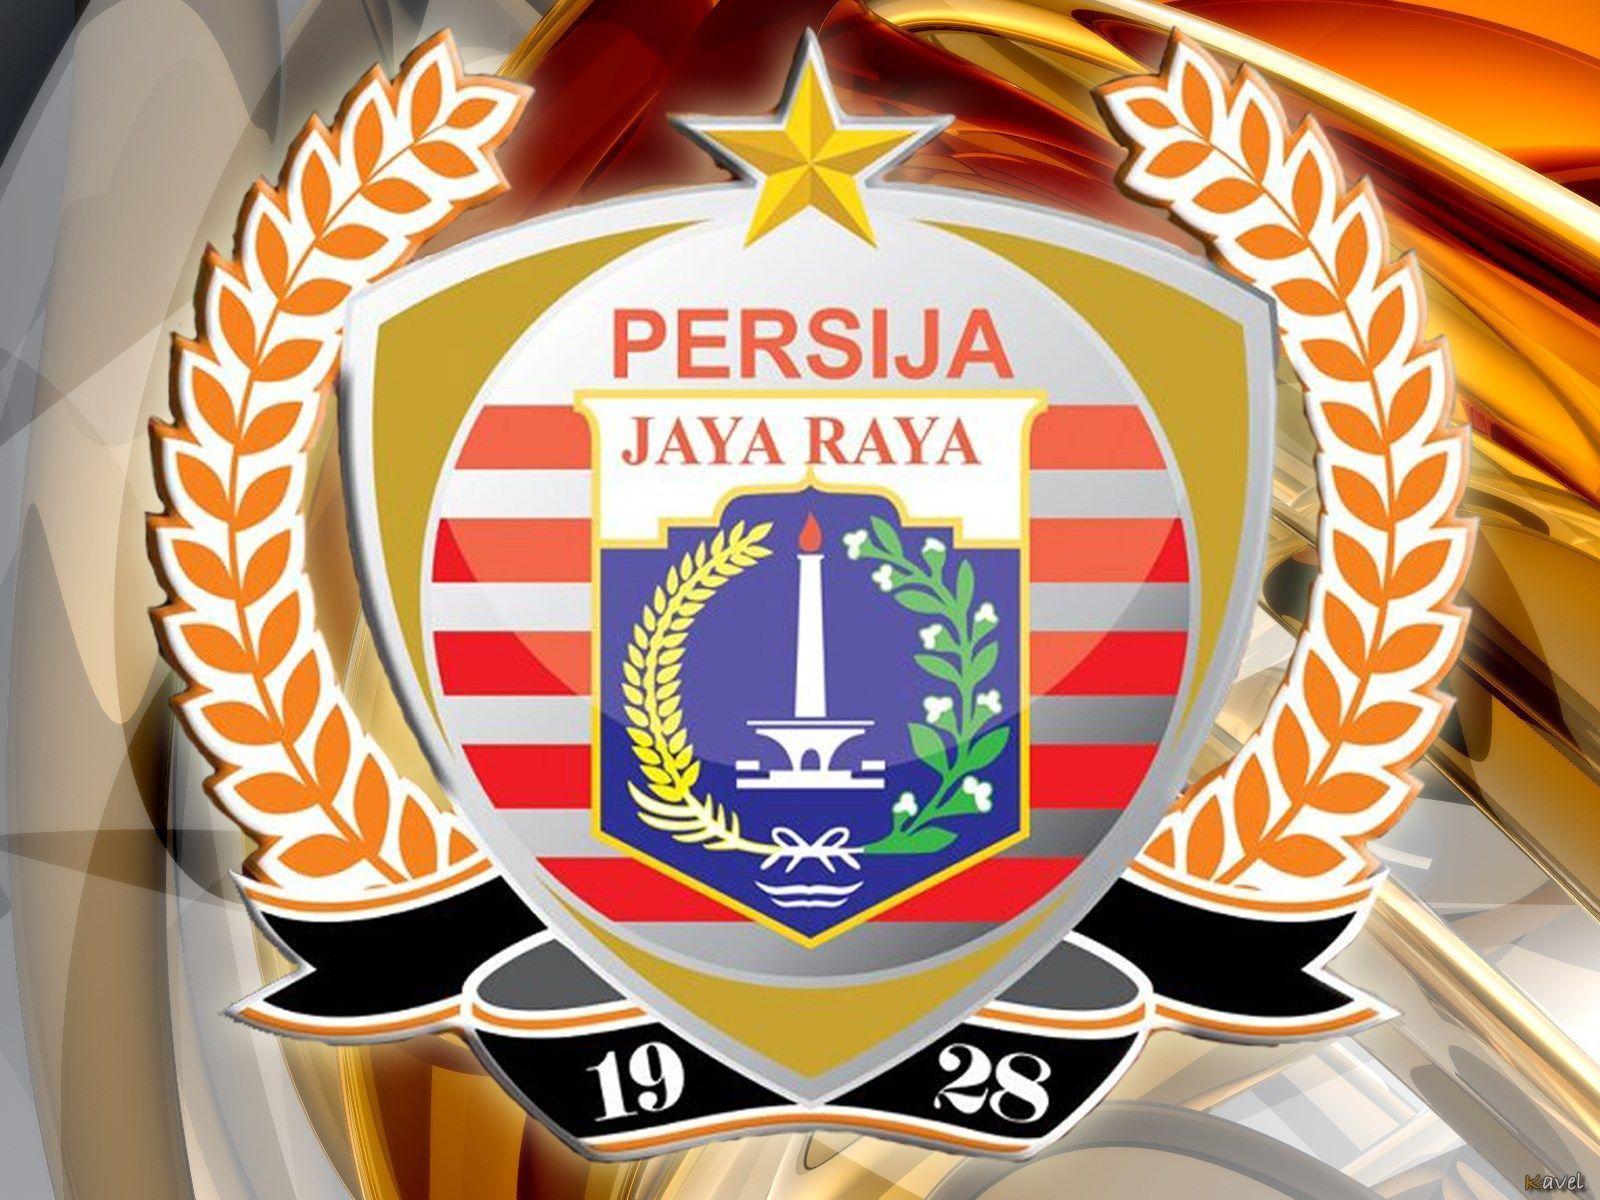 Download Foto Persija Jakarta - KibrisPDR